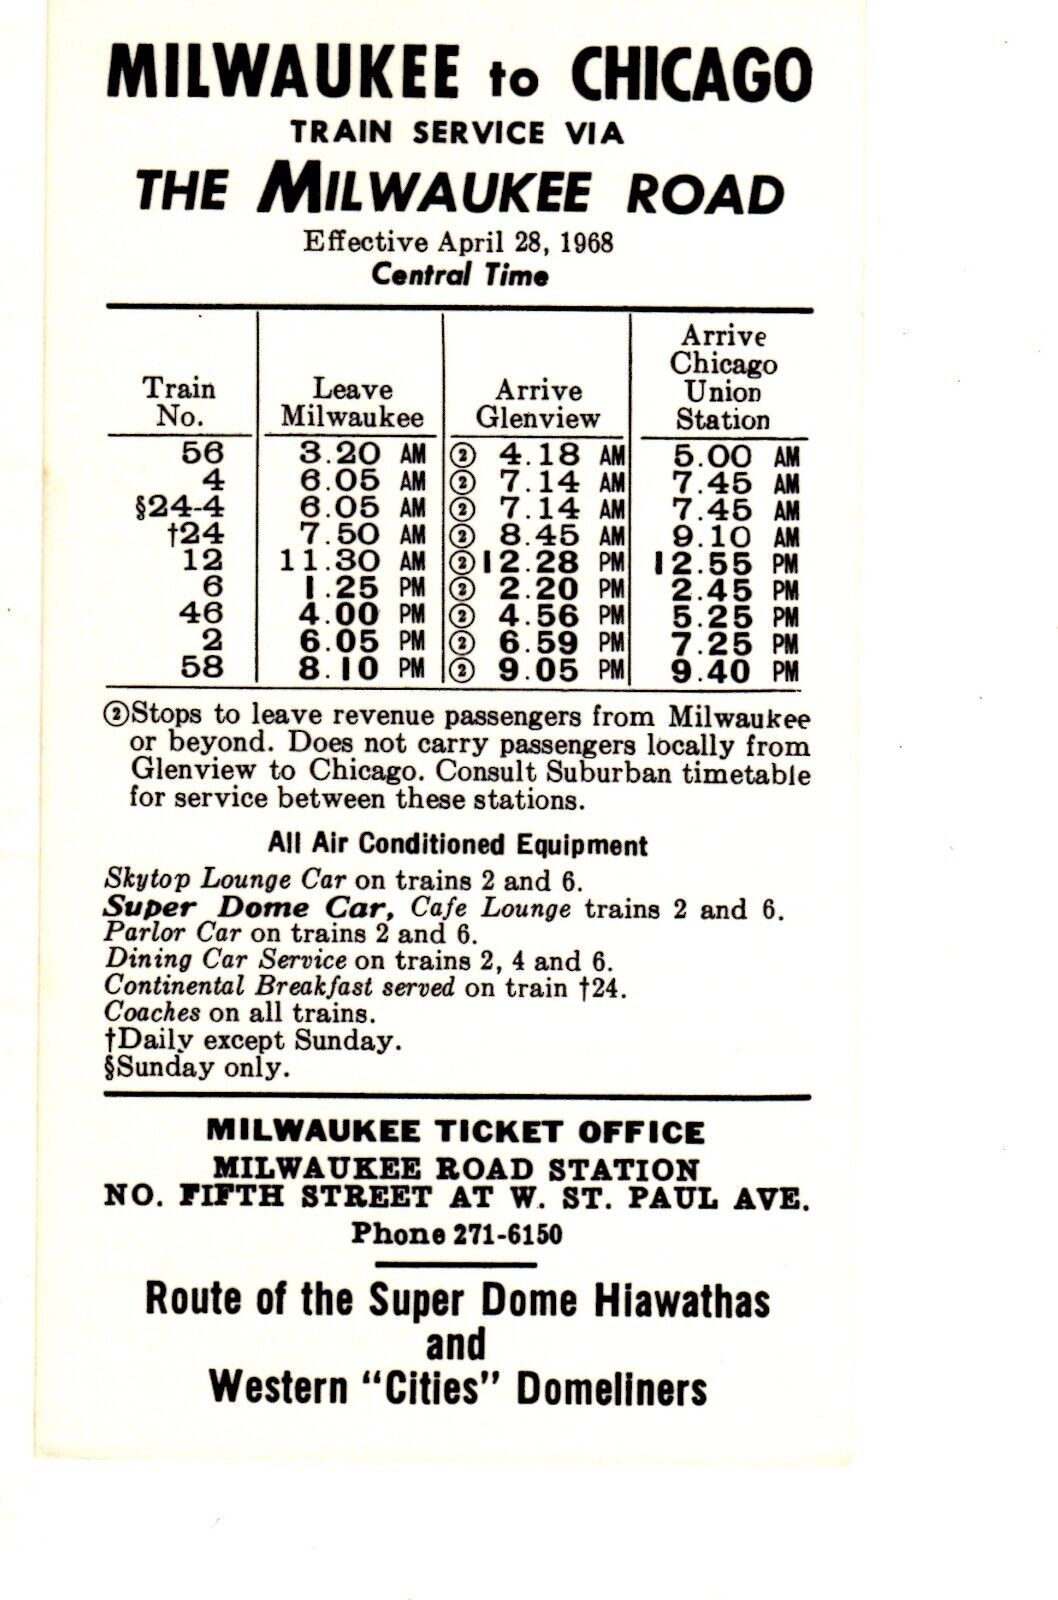 MILWAUKEE ROAD RAILROAD - CHICAGO TO MILWAUKEE TIMETABLE - 4/28/1968